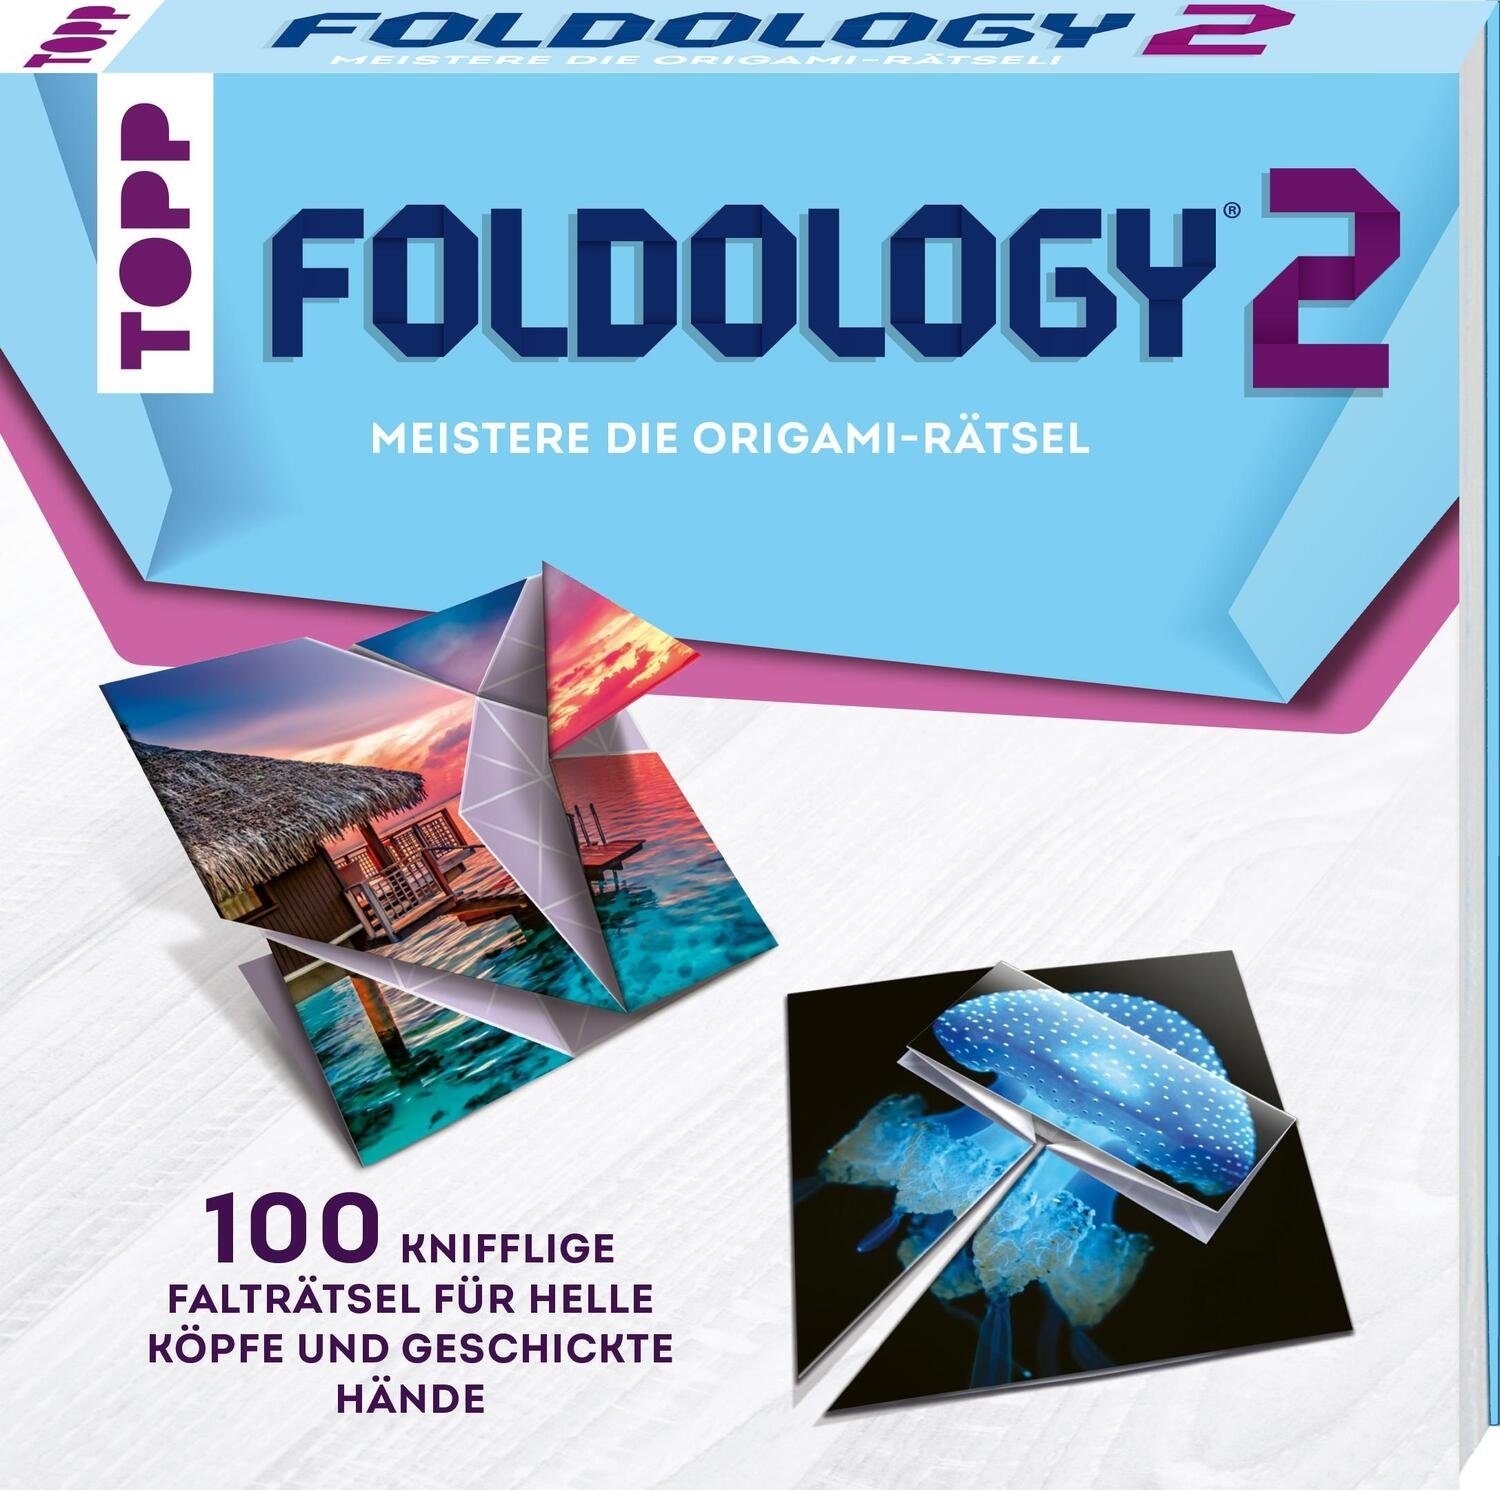 Frech Verlag Puzzle Foldology Meistere 2 - die Origami-Rätsel!, Puzzleteile